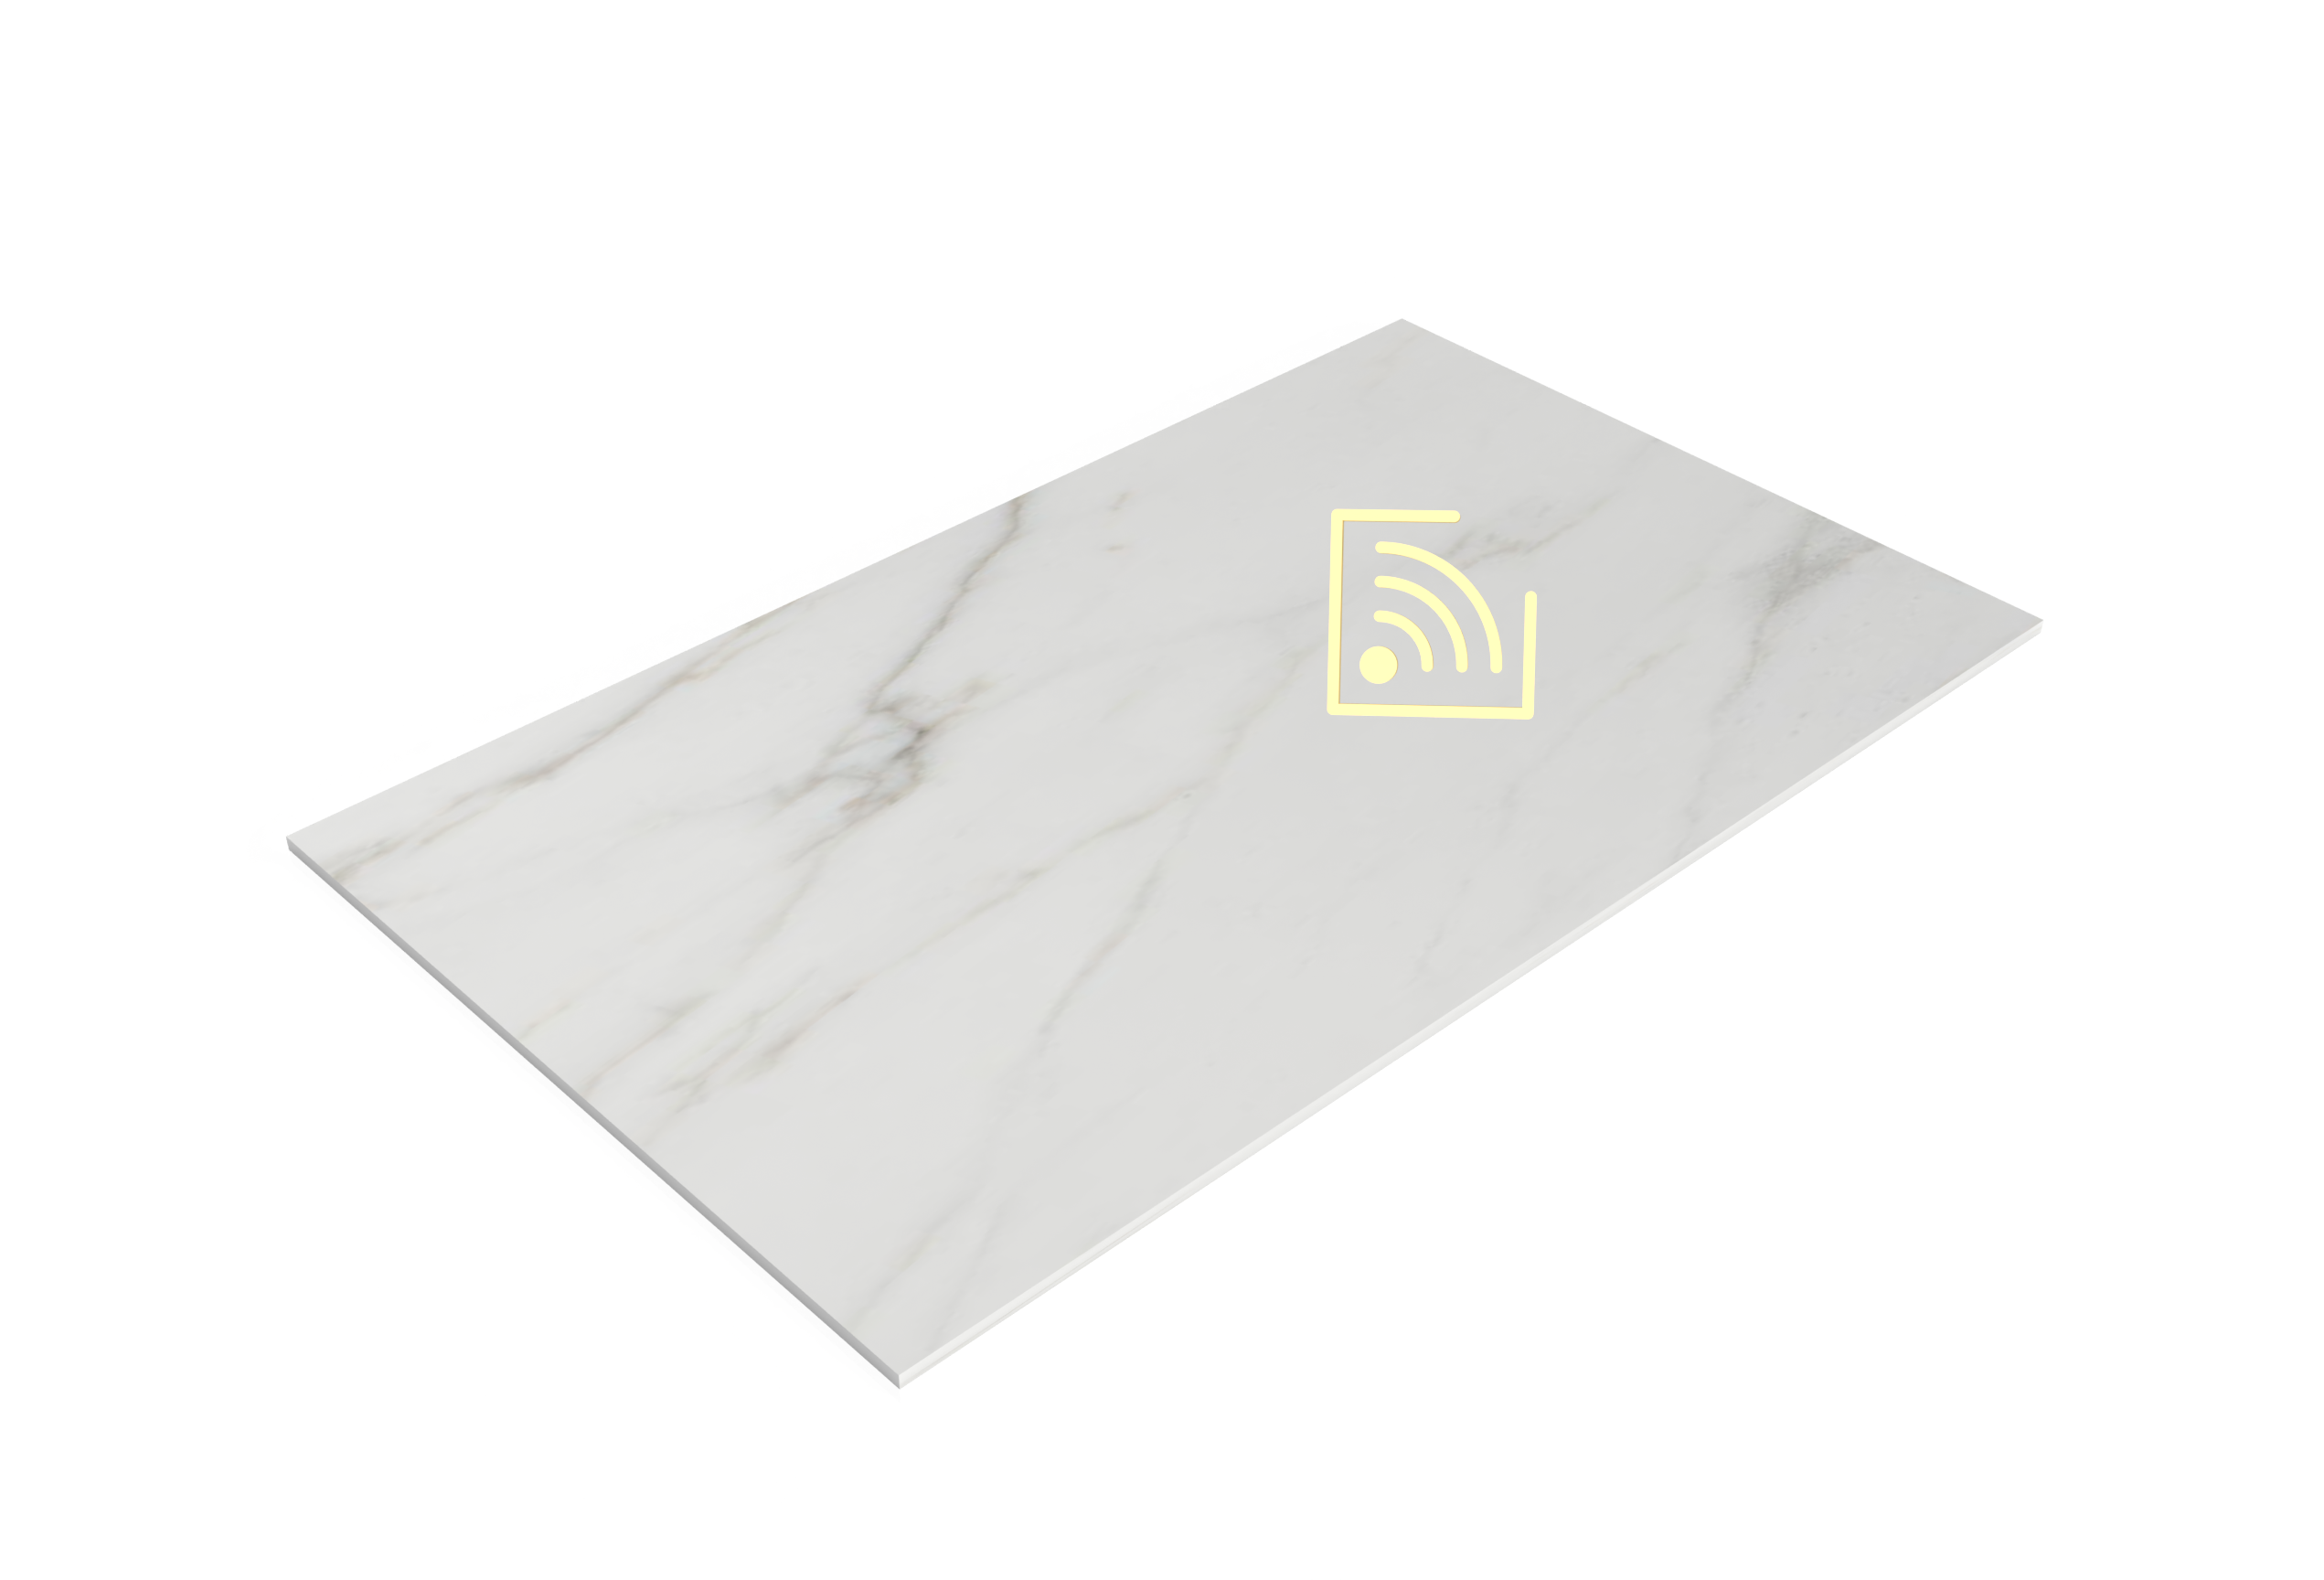 Quartz slab with embedded wireless tracker